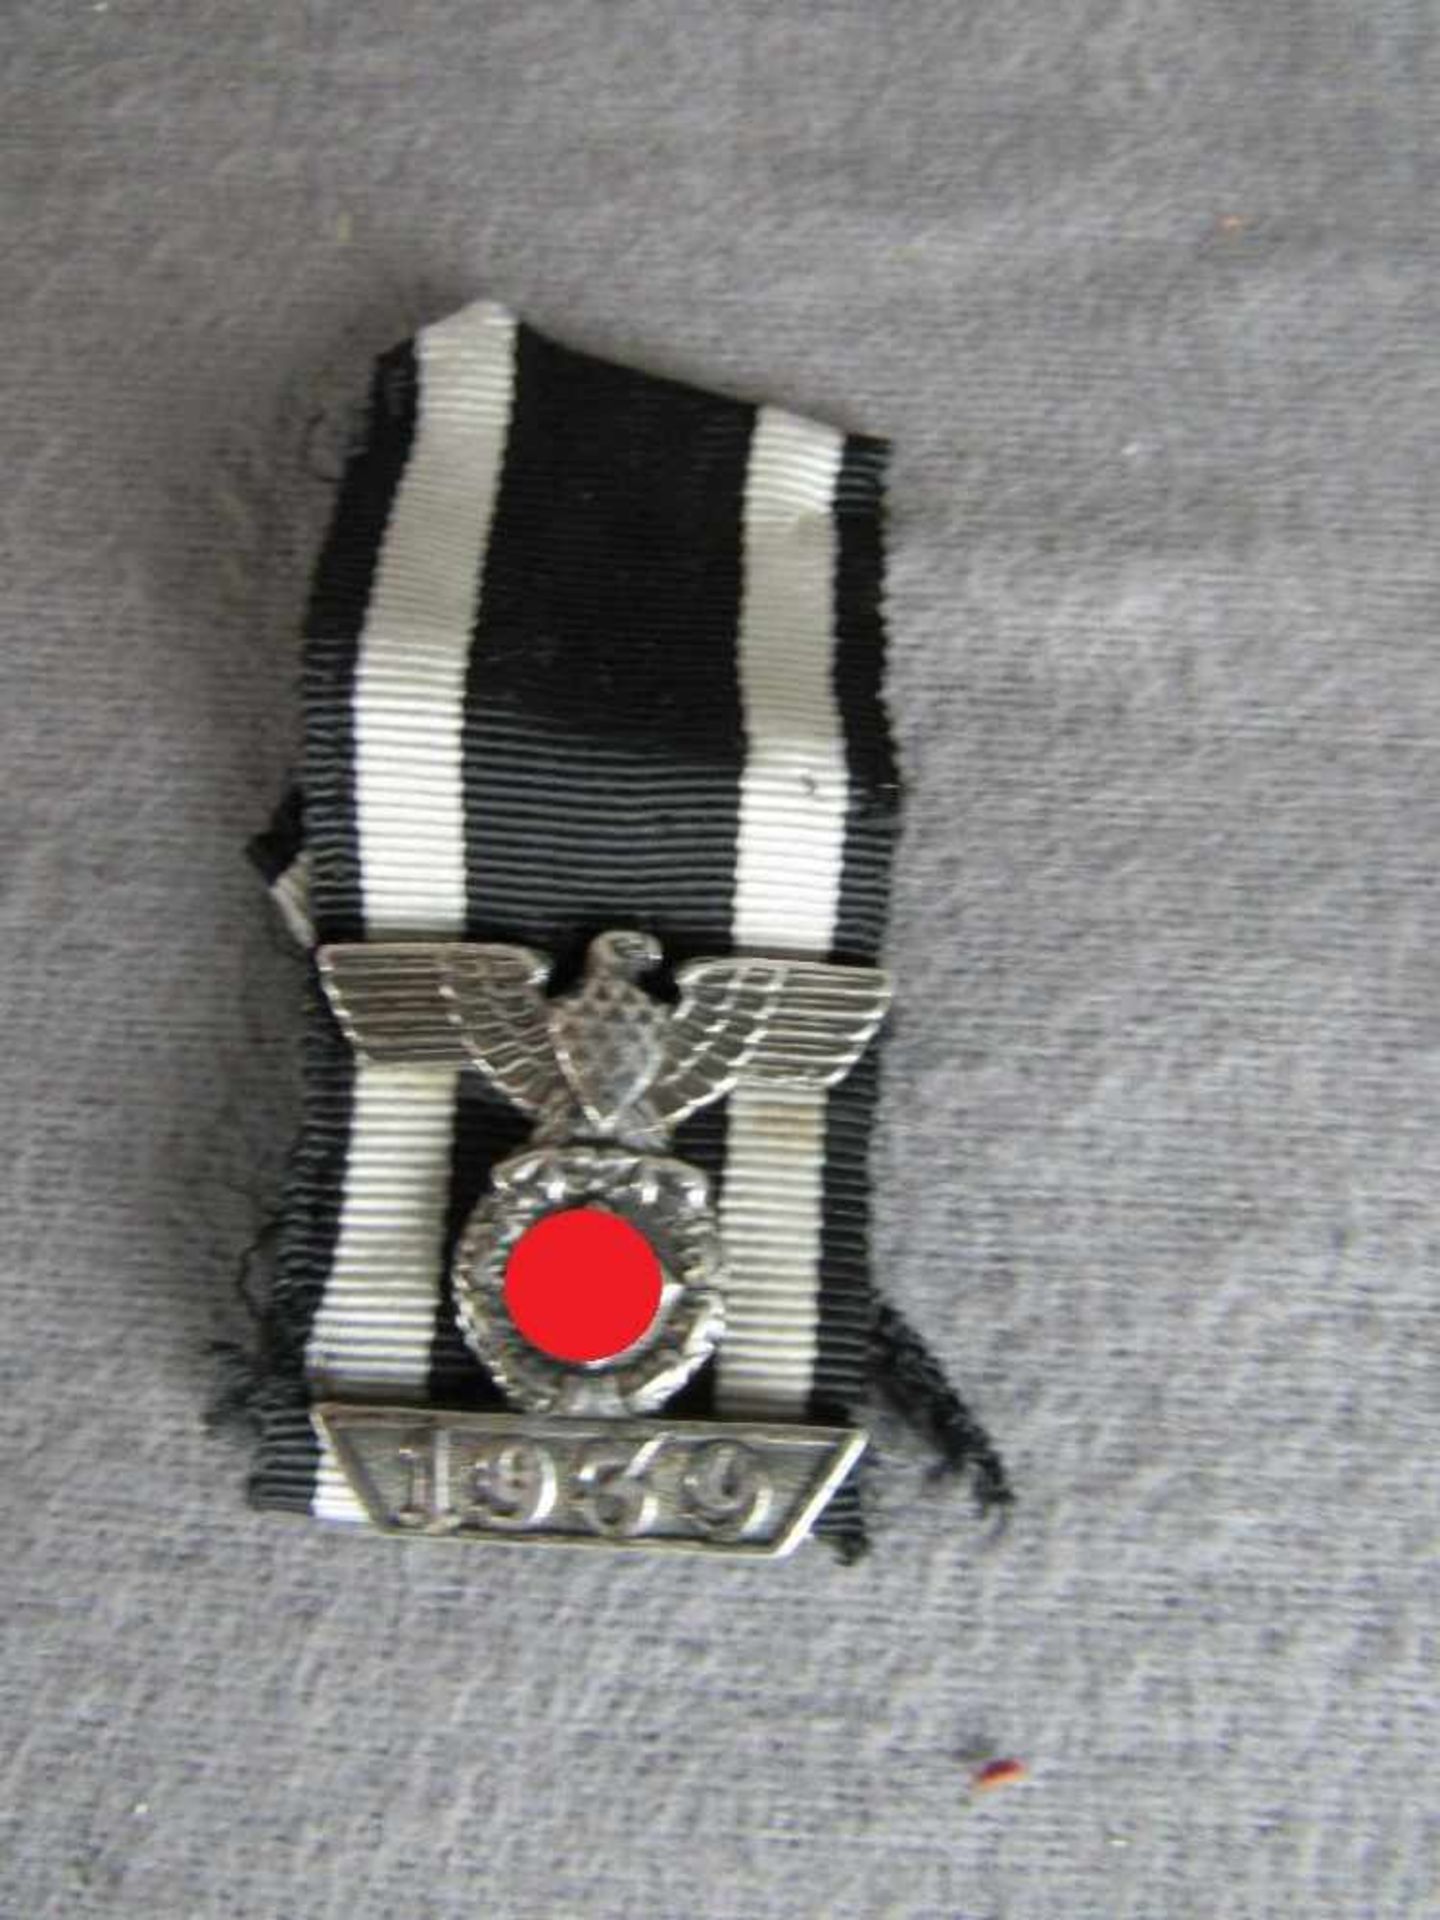 Spange Orden 1939 zum EK2 Band 3. Reich ungeprüft Wiederholungspange zum Eisernen Kreuz